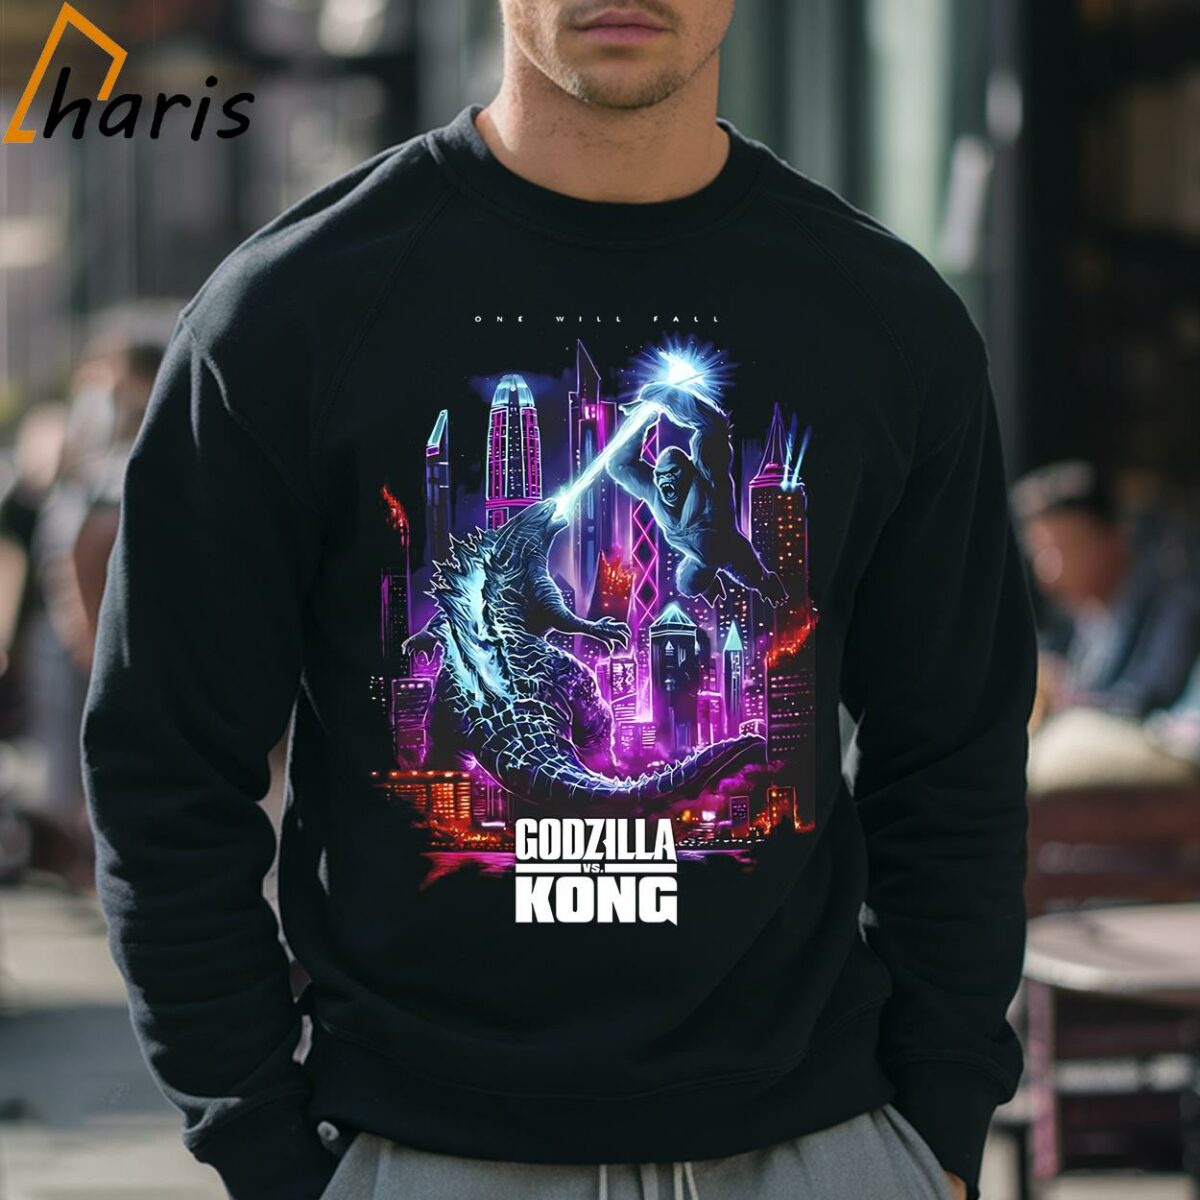 Godzilla Vs Kong One Will Fall Shirt 3 Sweatshirt